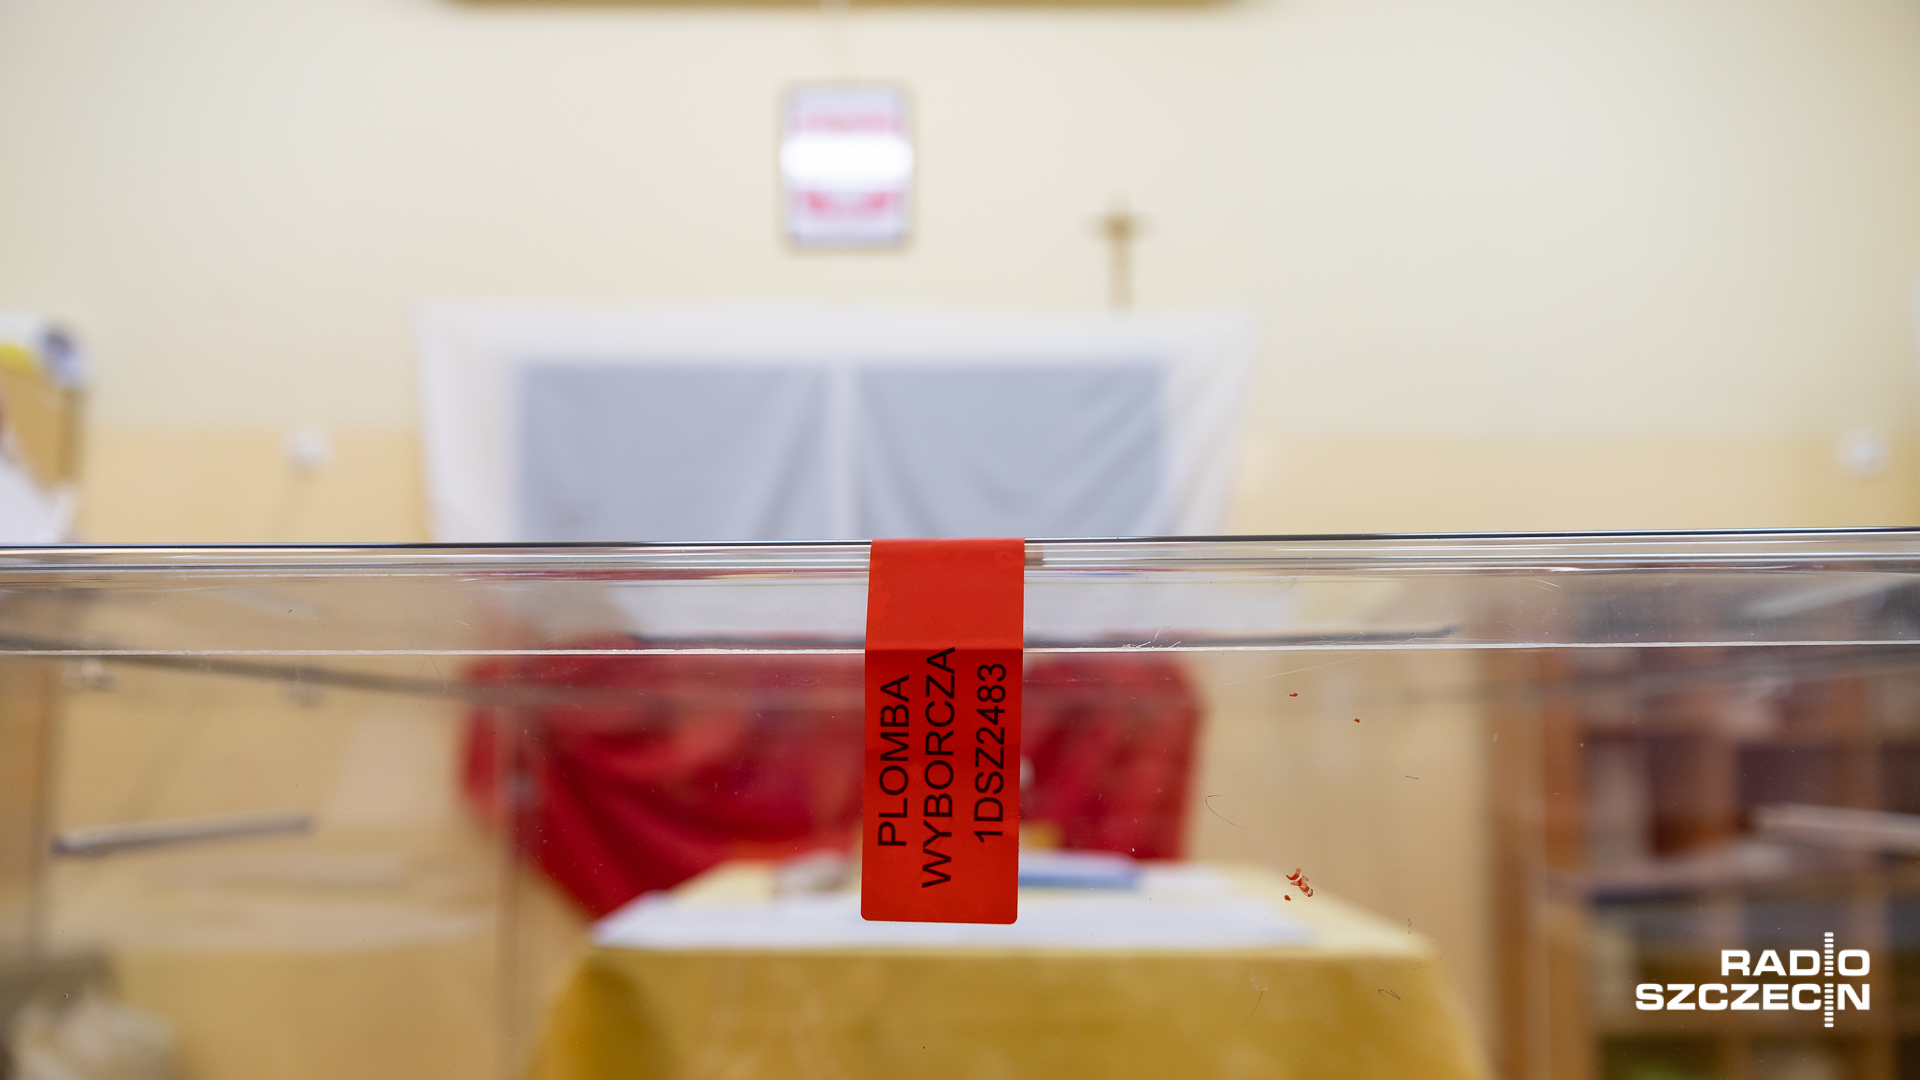 Gmina Golczewo organizuje bezpłatny transport na najbliższe wybory parlamentarne, jaki i na ogólnokrajowe referendum.